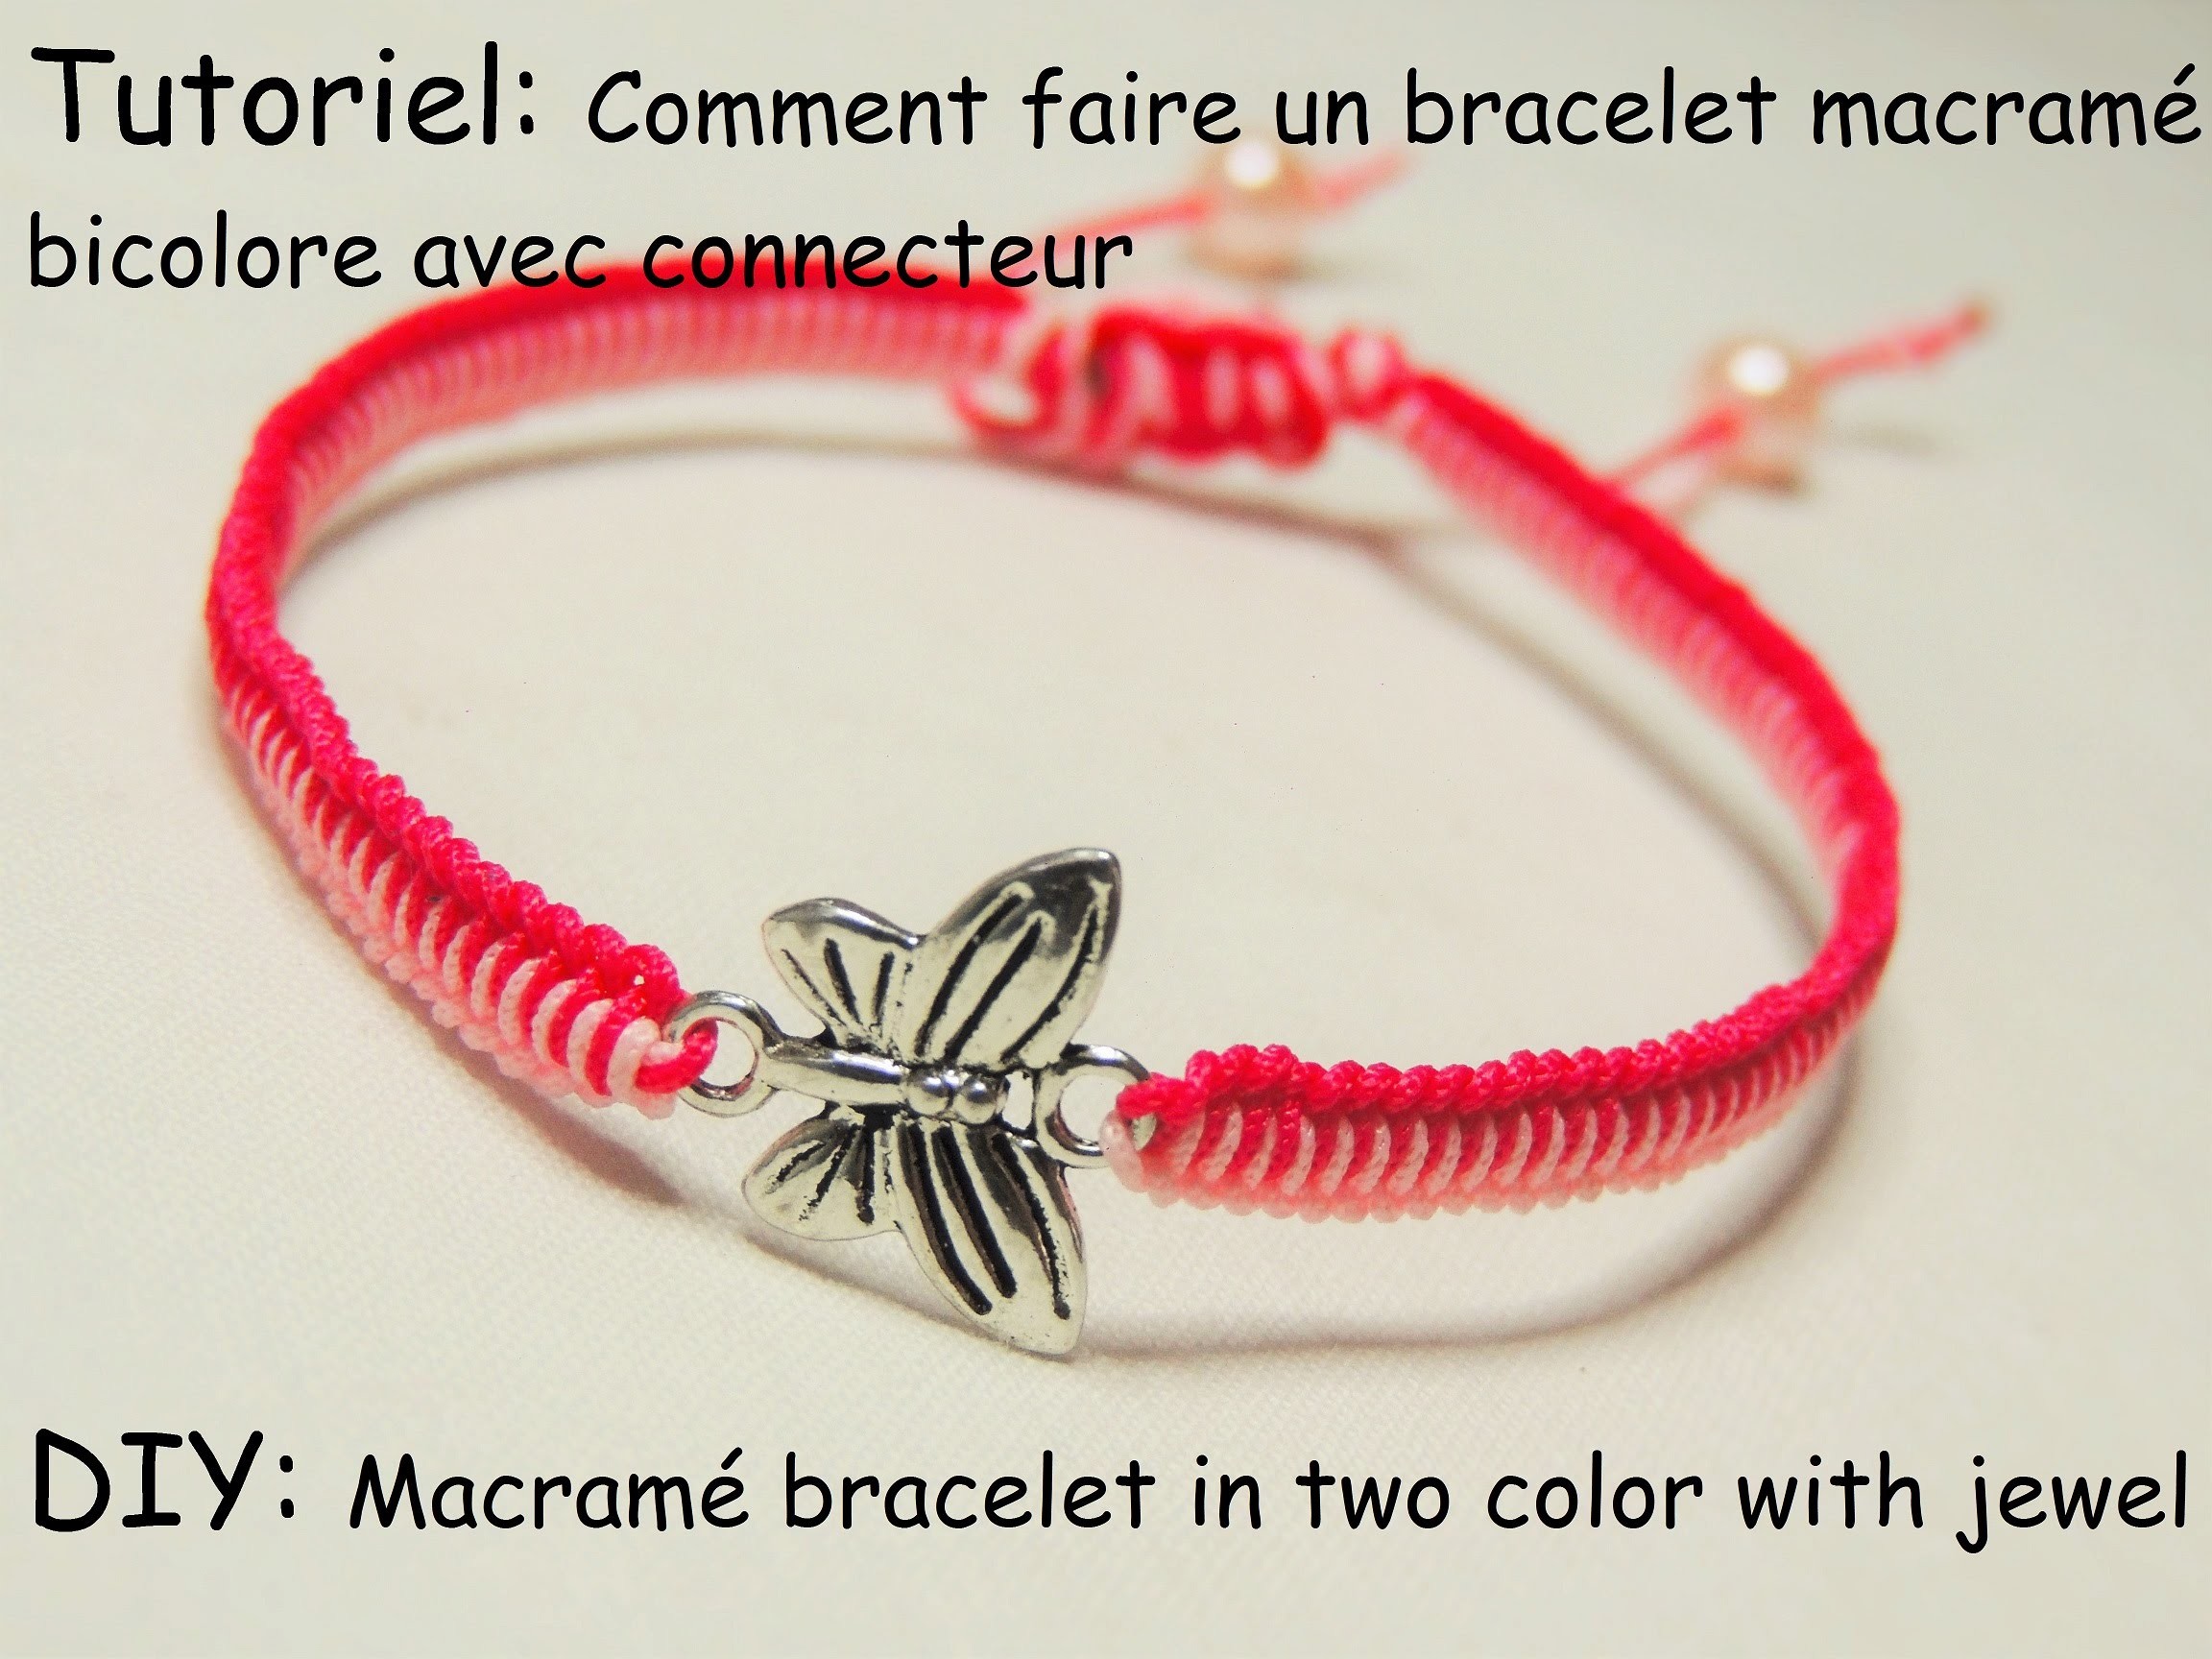 Faire un bracelet macramé bicolore avec connecteur (DIY Macramé bracelet in two color with jewel)